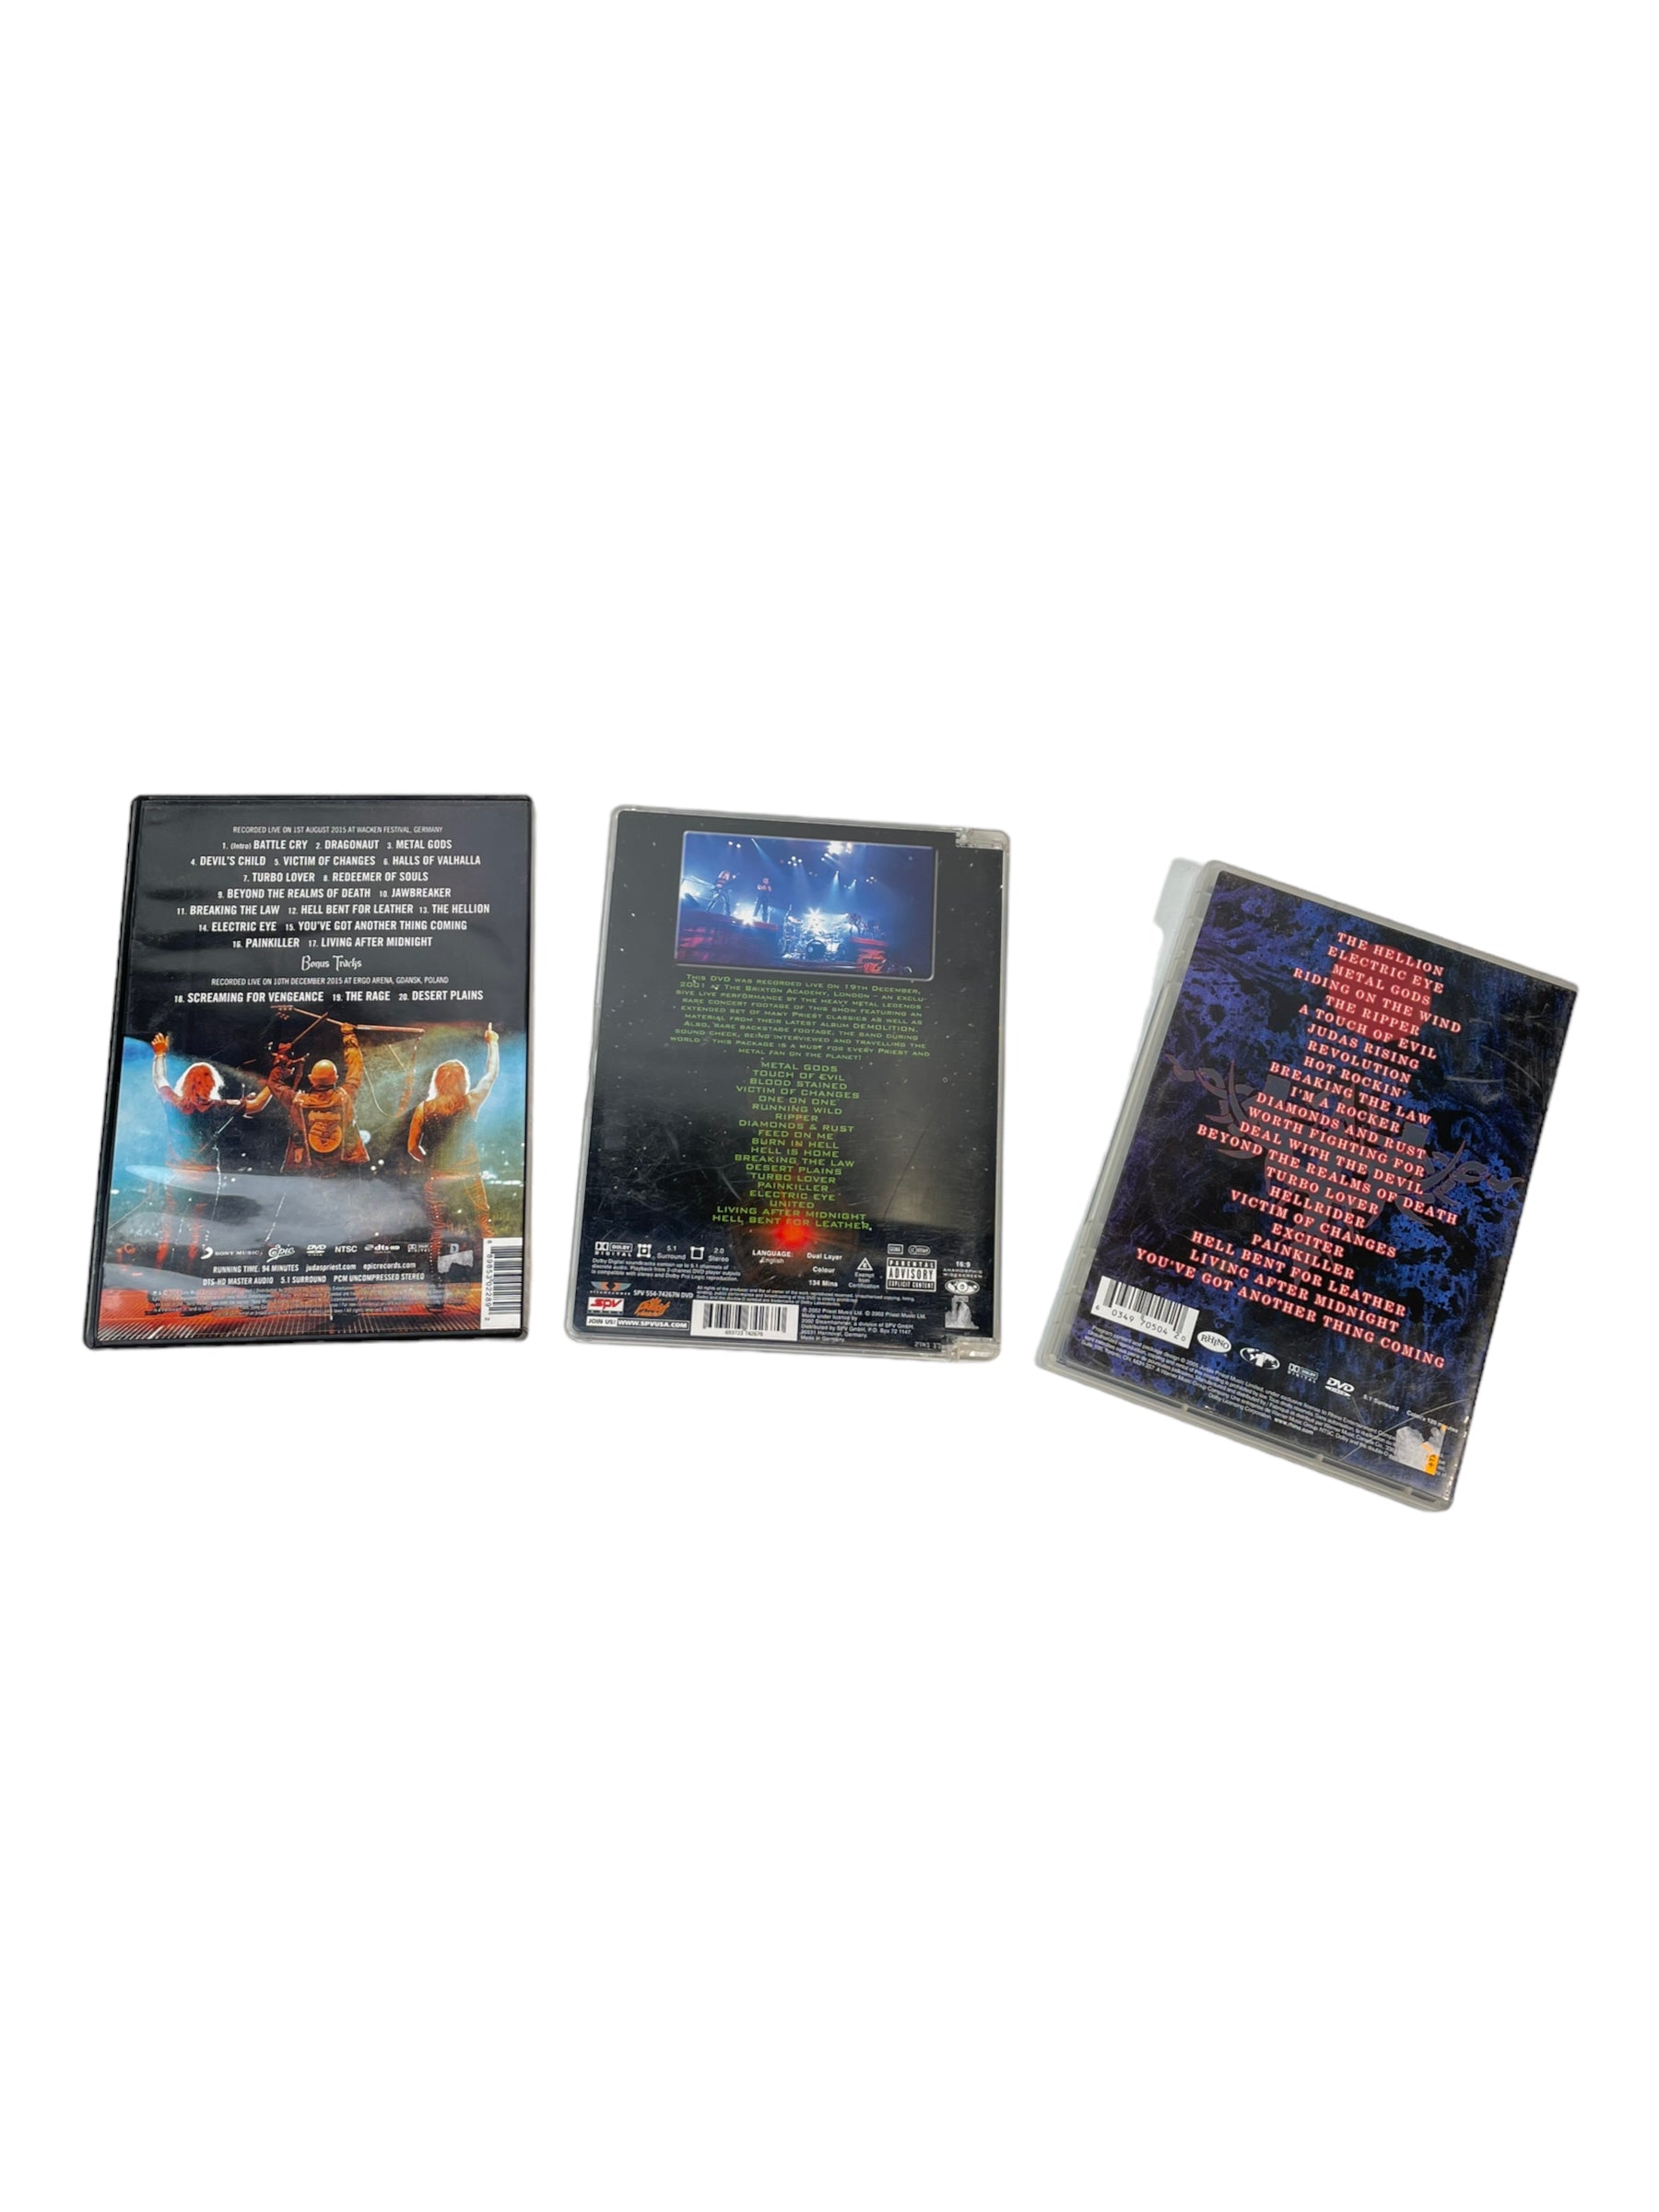 Set of 3 Judas Priest DVDs